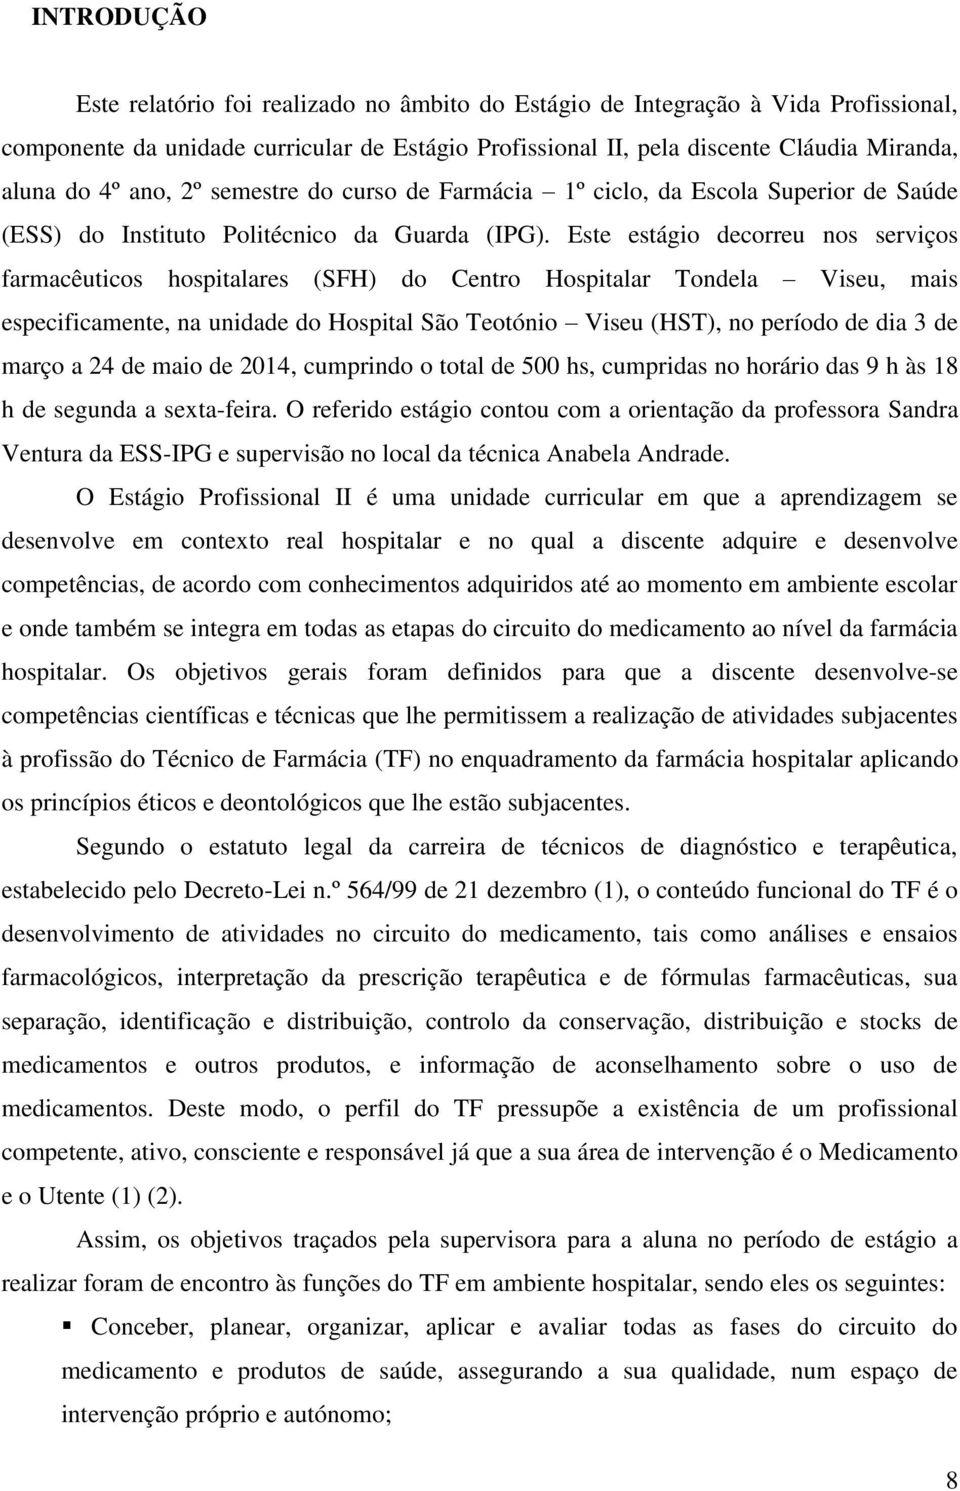 Este estágio decorreu nos serviços farmacêuticos hospitalares (SFH) do Centro Hospitalar Tondela Viseu, mais especificamente, na unidade do Hospital São Teotónio Viseu (HST), no período de dia 3 de